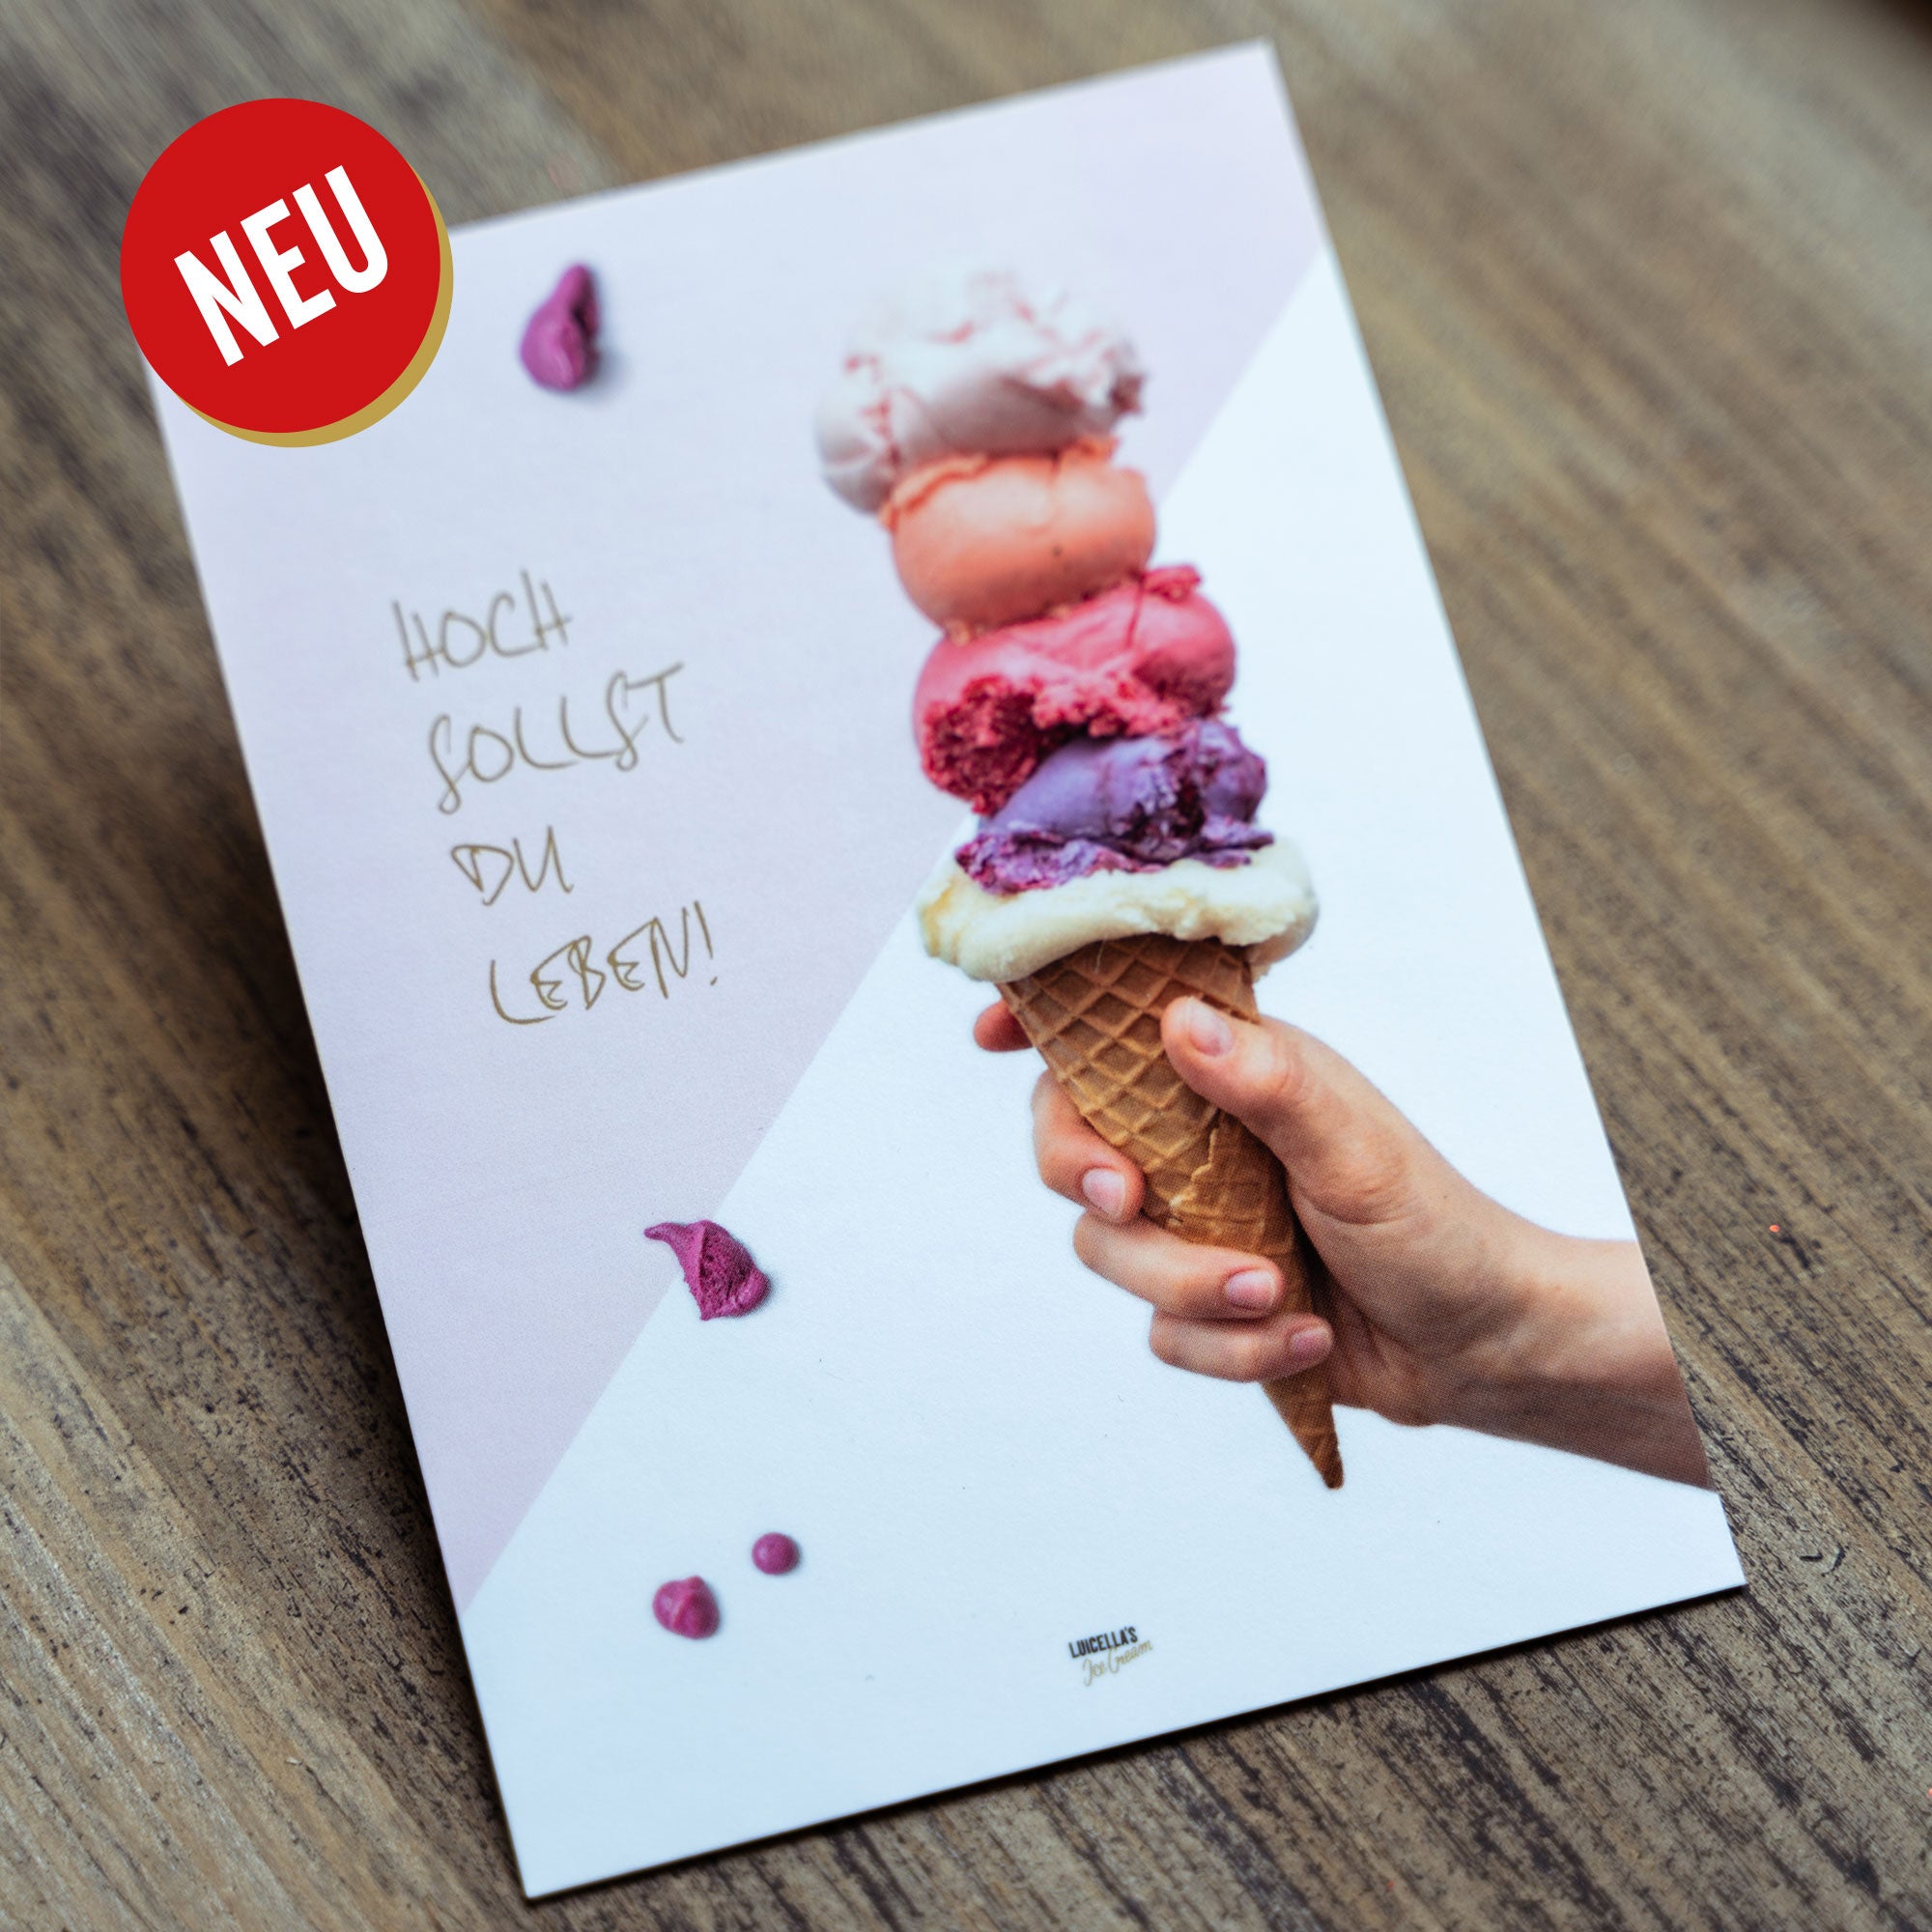 Postkarte "Hoch sollst du leben" mit Eiswaffel